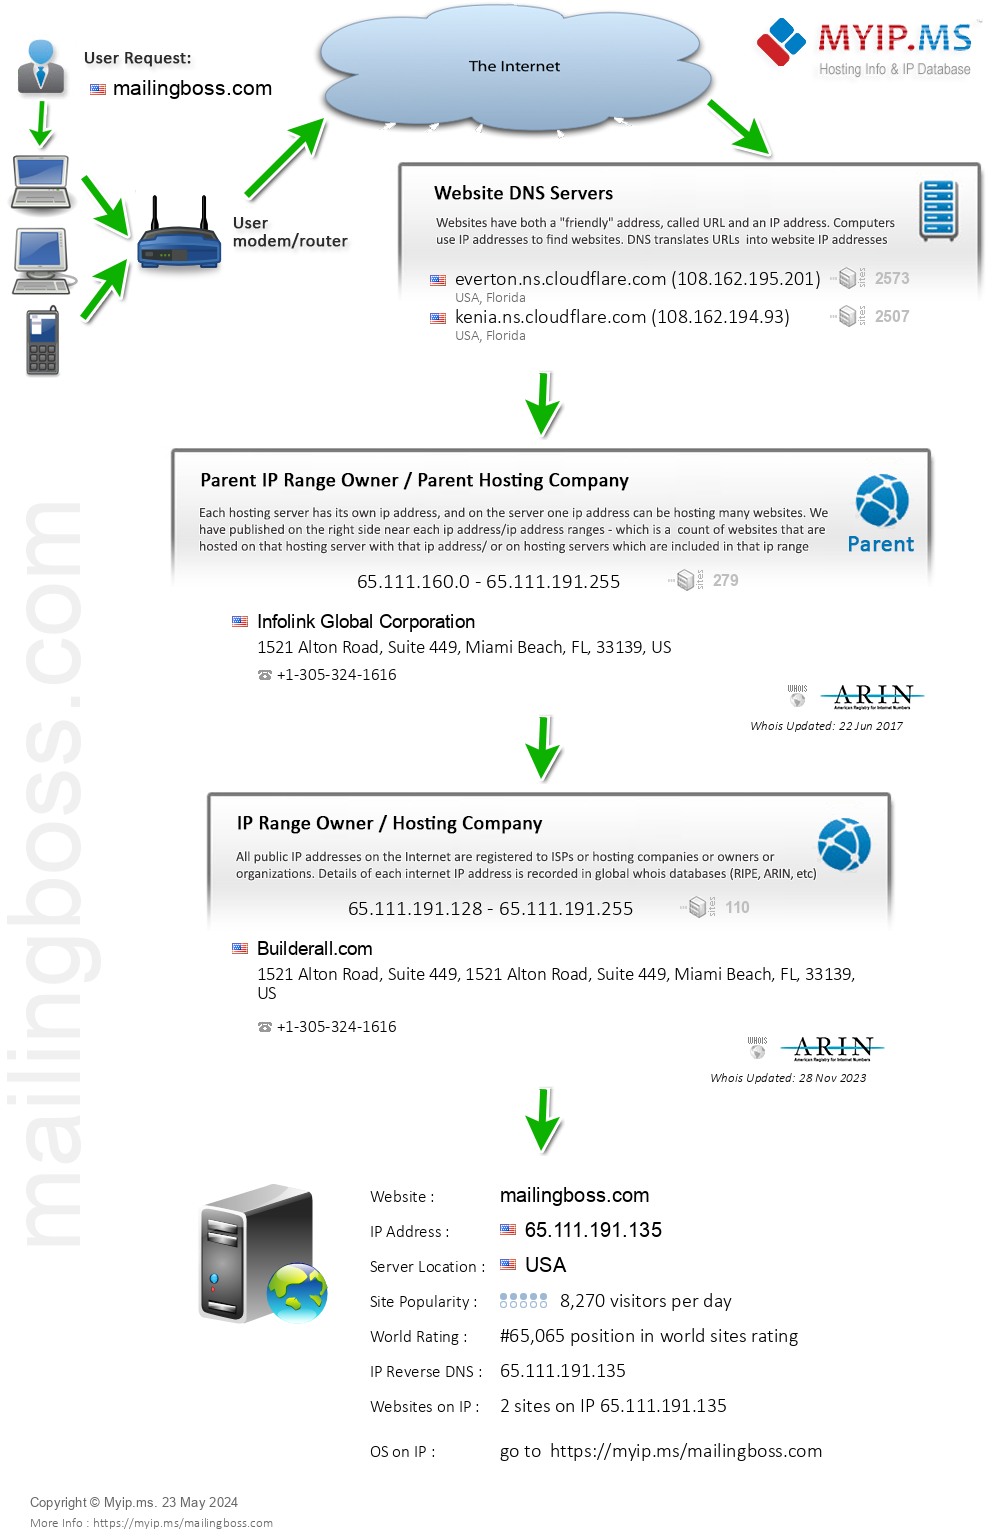 Mailingboss.com - Website Hosting Visual IP Diagram